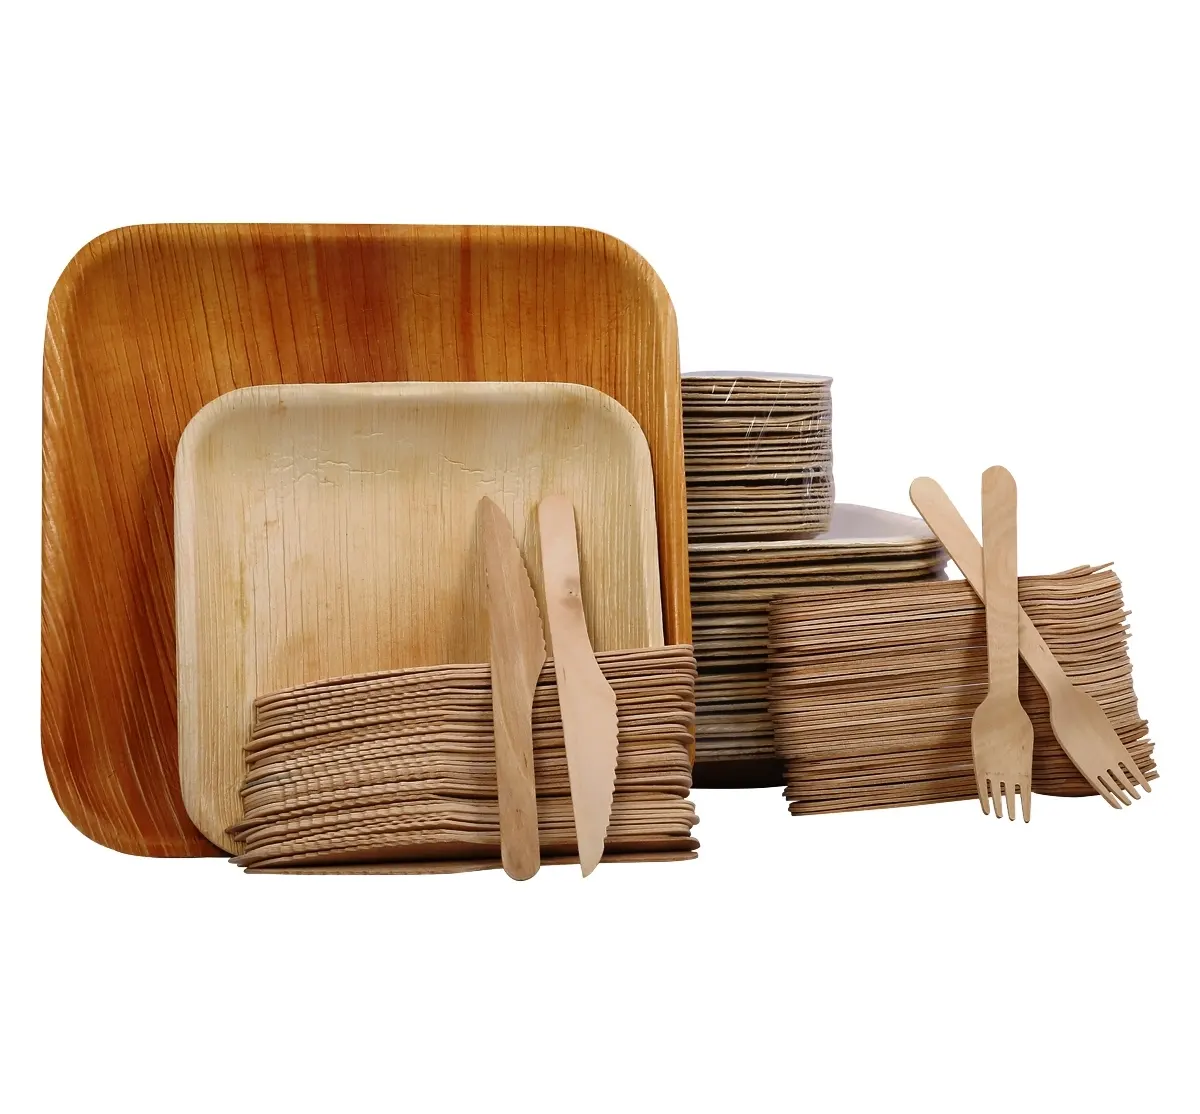 Placas de festa de bambu biodegradáveis, ecológicas para jantar 100% naturais resistentes para áreas externas, casamentos